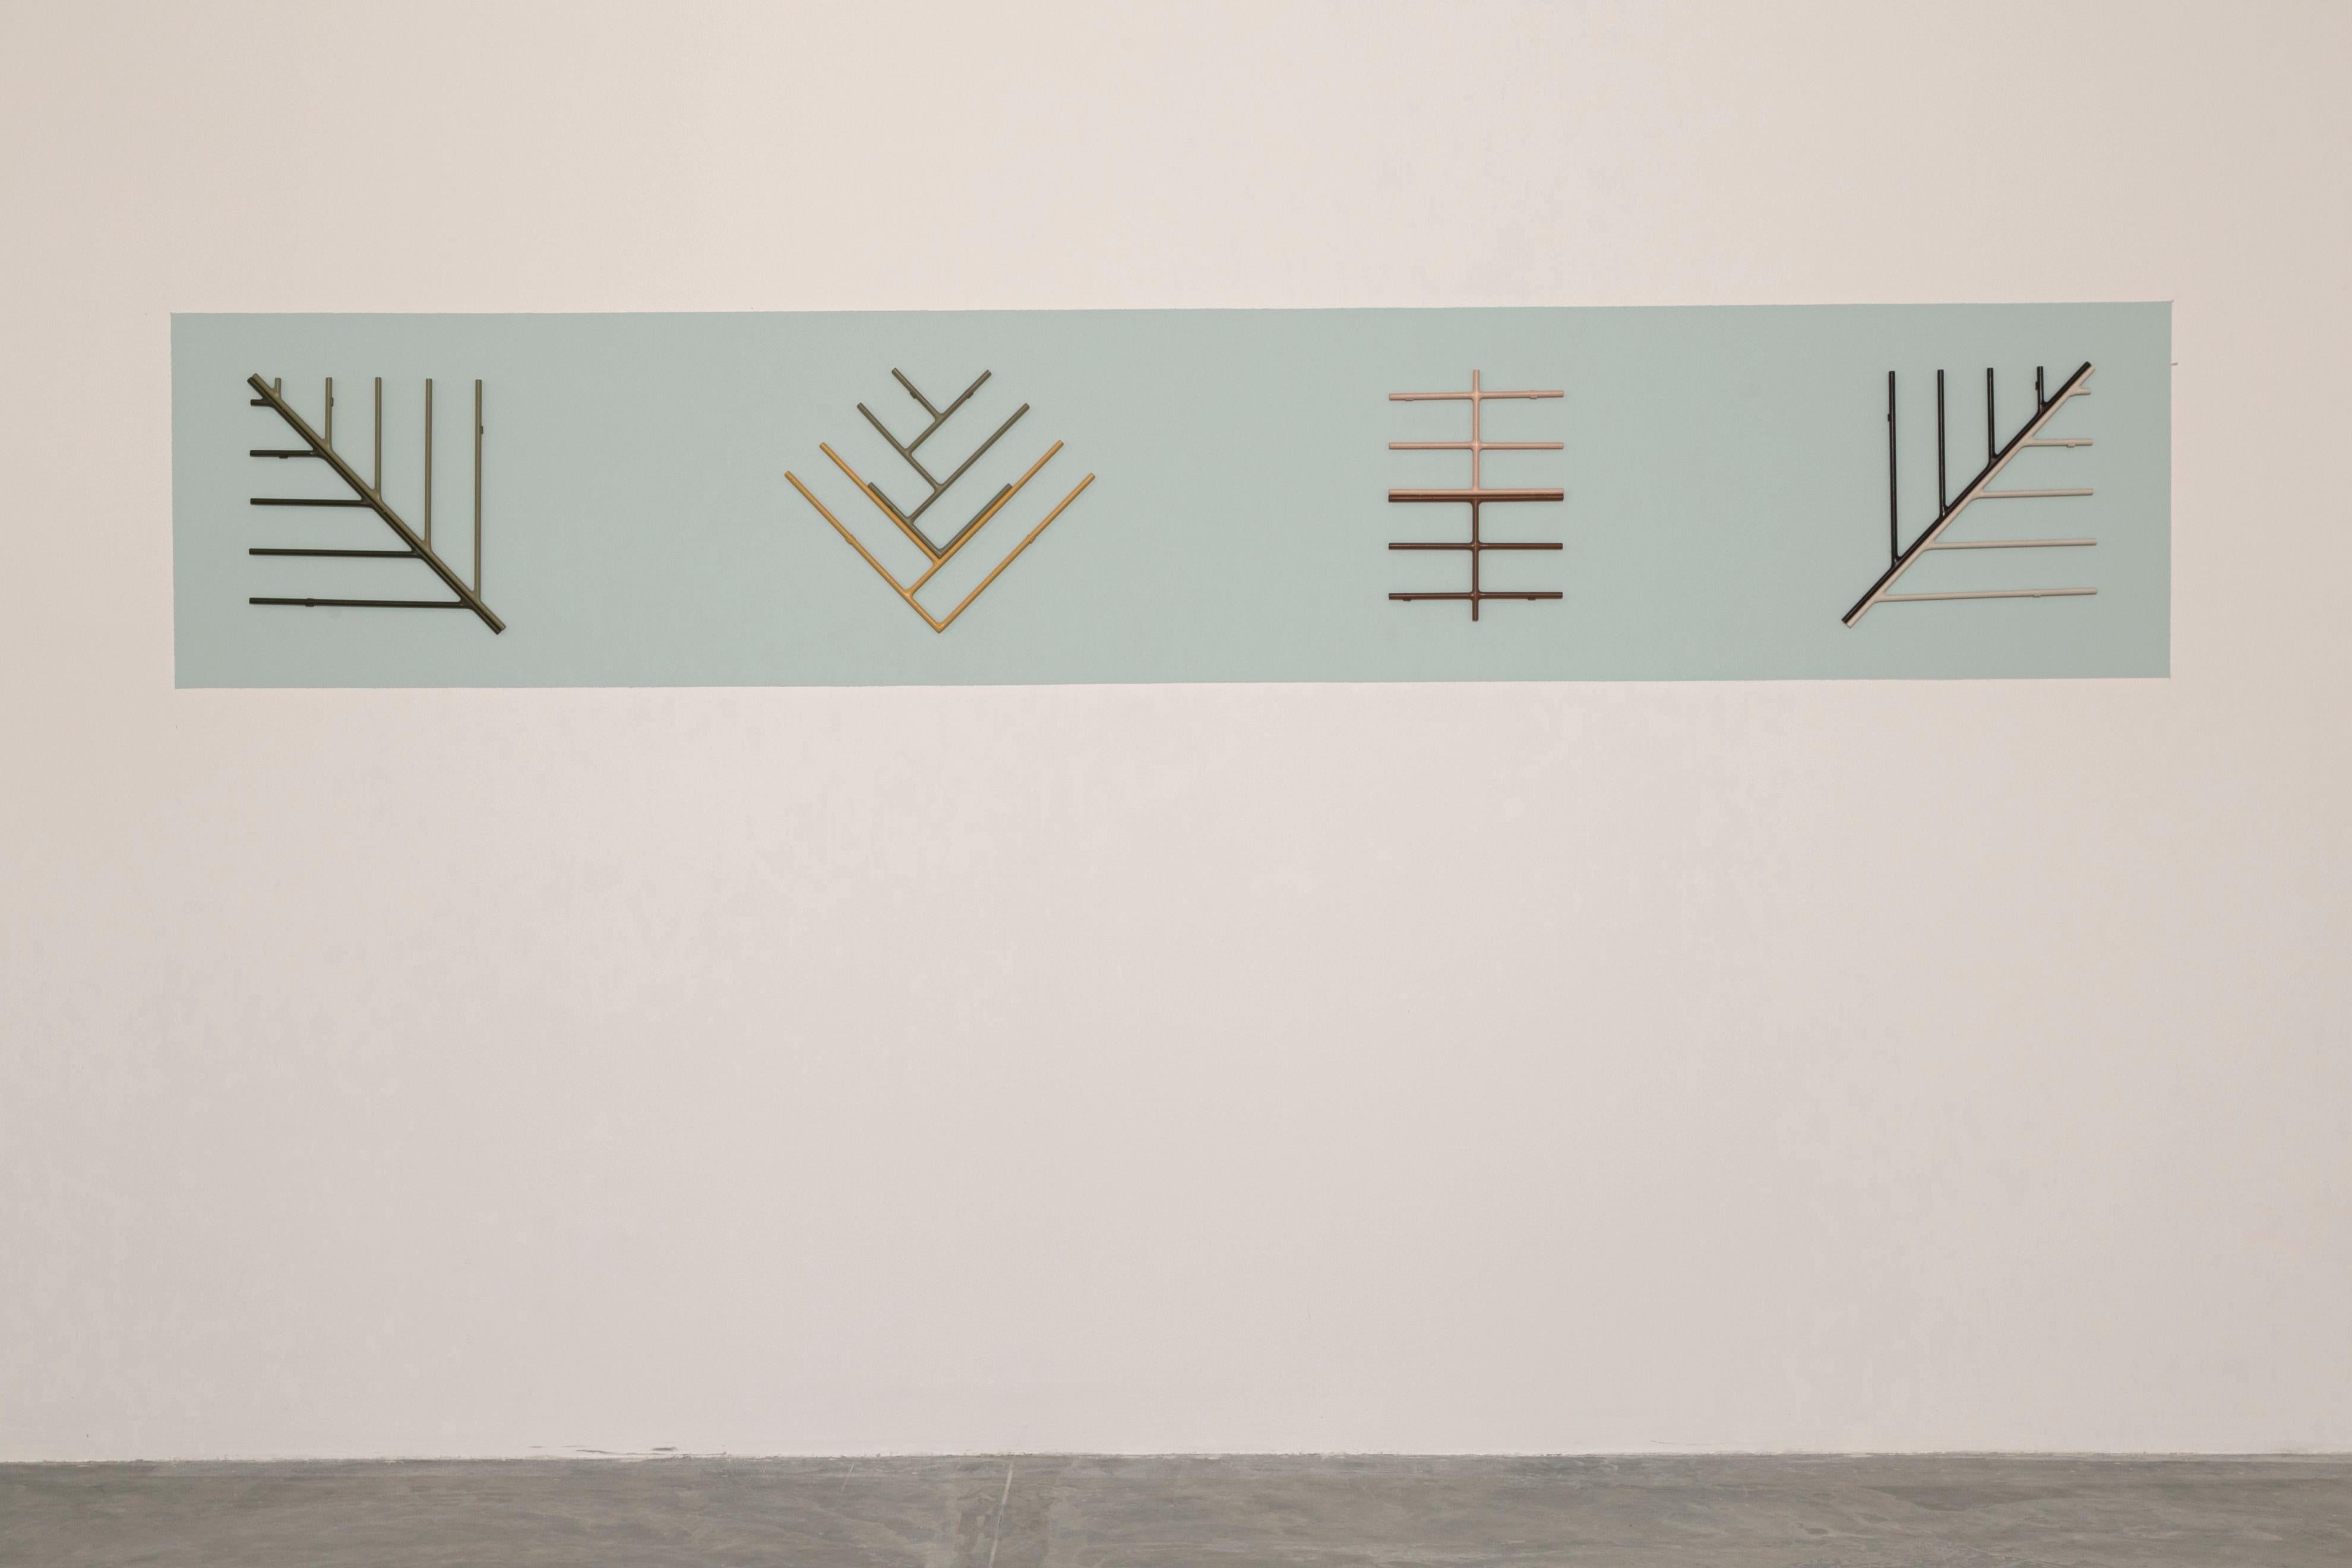 4er-Set Palmen Lebenszyklus Wanddekoration von Sofia Alvarado
Abmessungen: T 300 x B 40 x H 3 cm
MATERIAL: Ständer aus lackiertem Metall
Ein Unikat.

FI ist ein dekorativer Künstler, der die kreative Offenbarung der Sensibilität des angeborenen